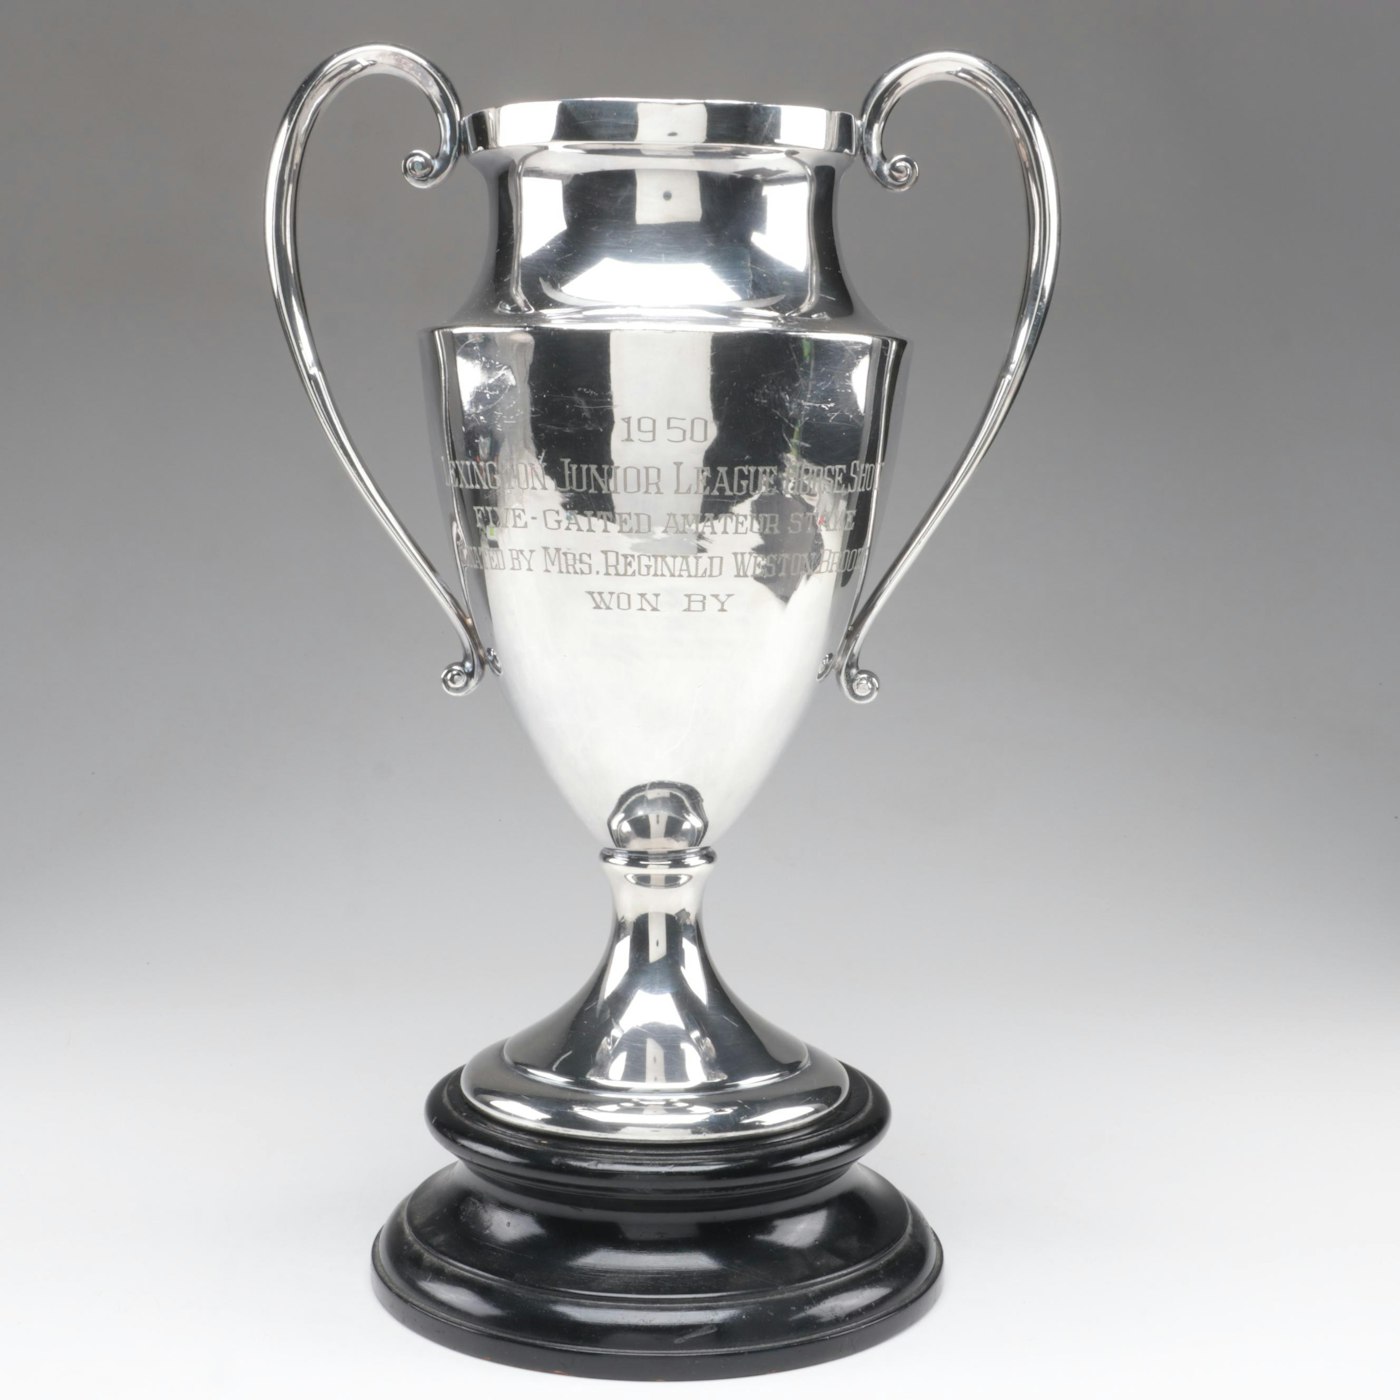 Derby Silver Plate Lexington Junior League Horse Show Trophy, 1950 EBTH